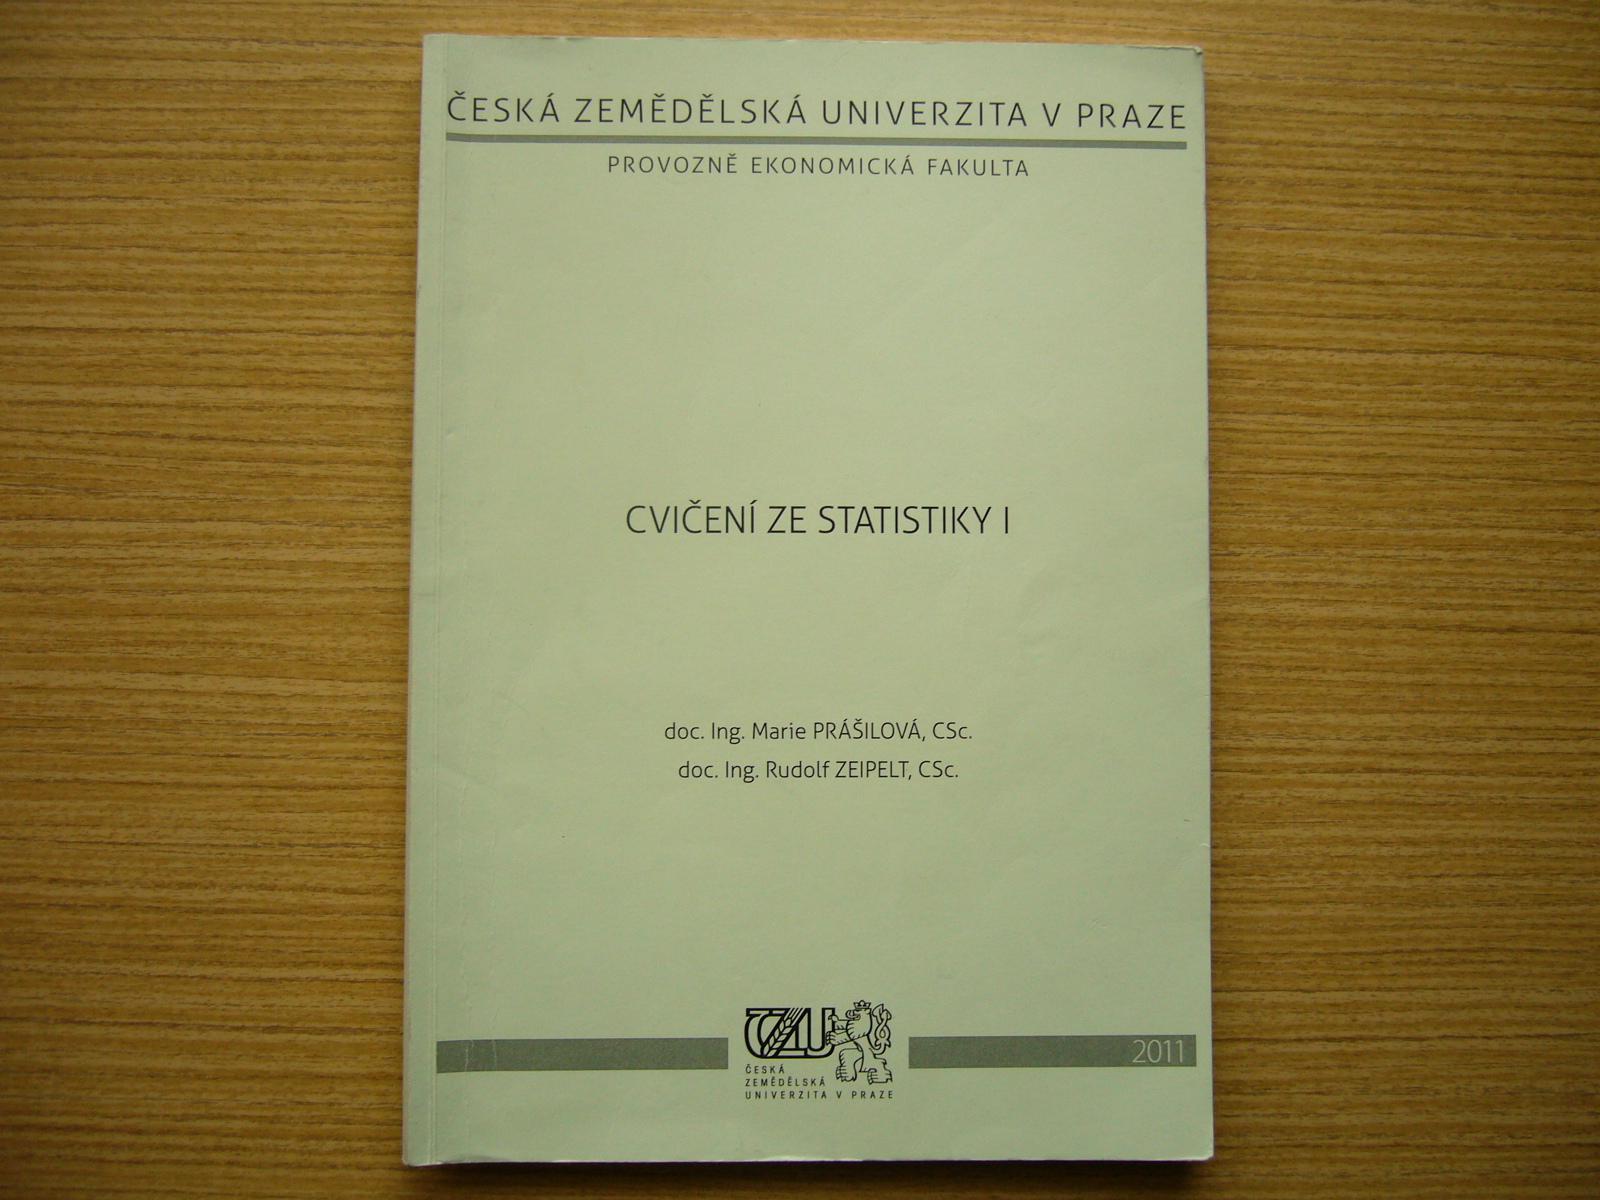 Prášilová, Zeipelt - Cvičenie zo štatistiky I. | 2011 - Učebnice